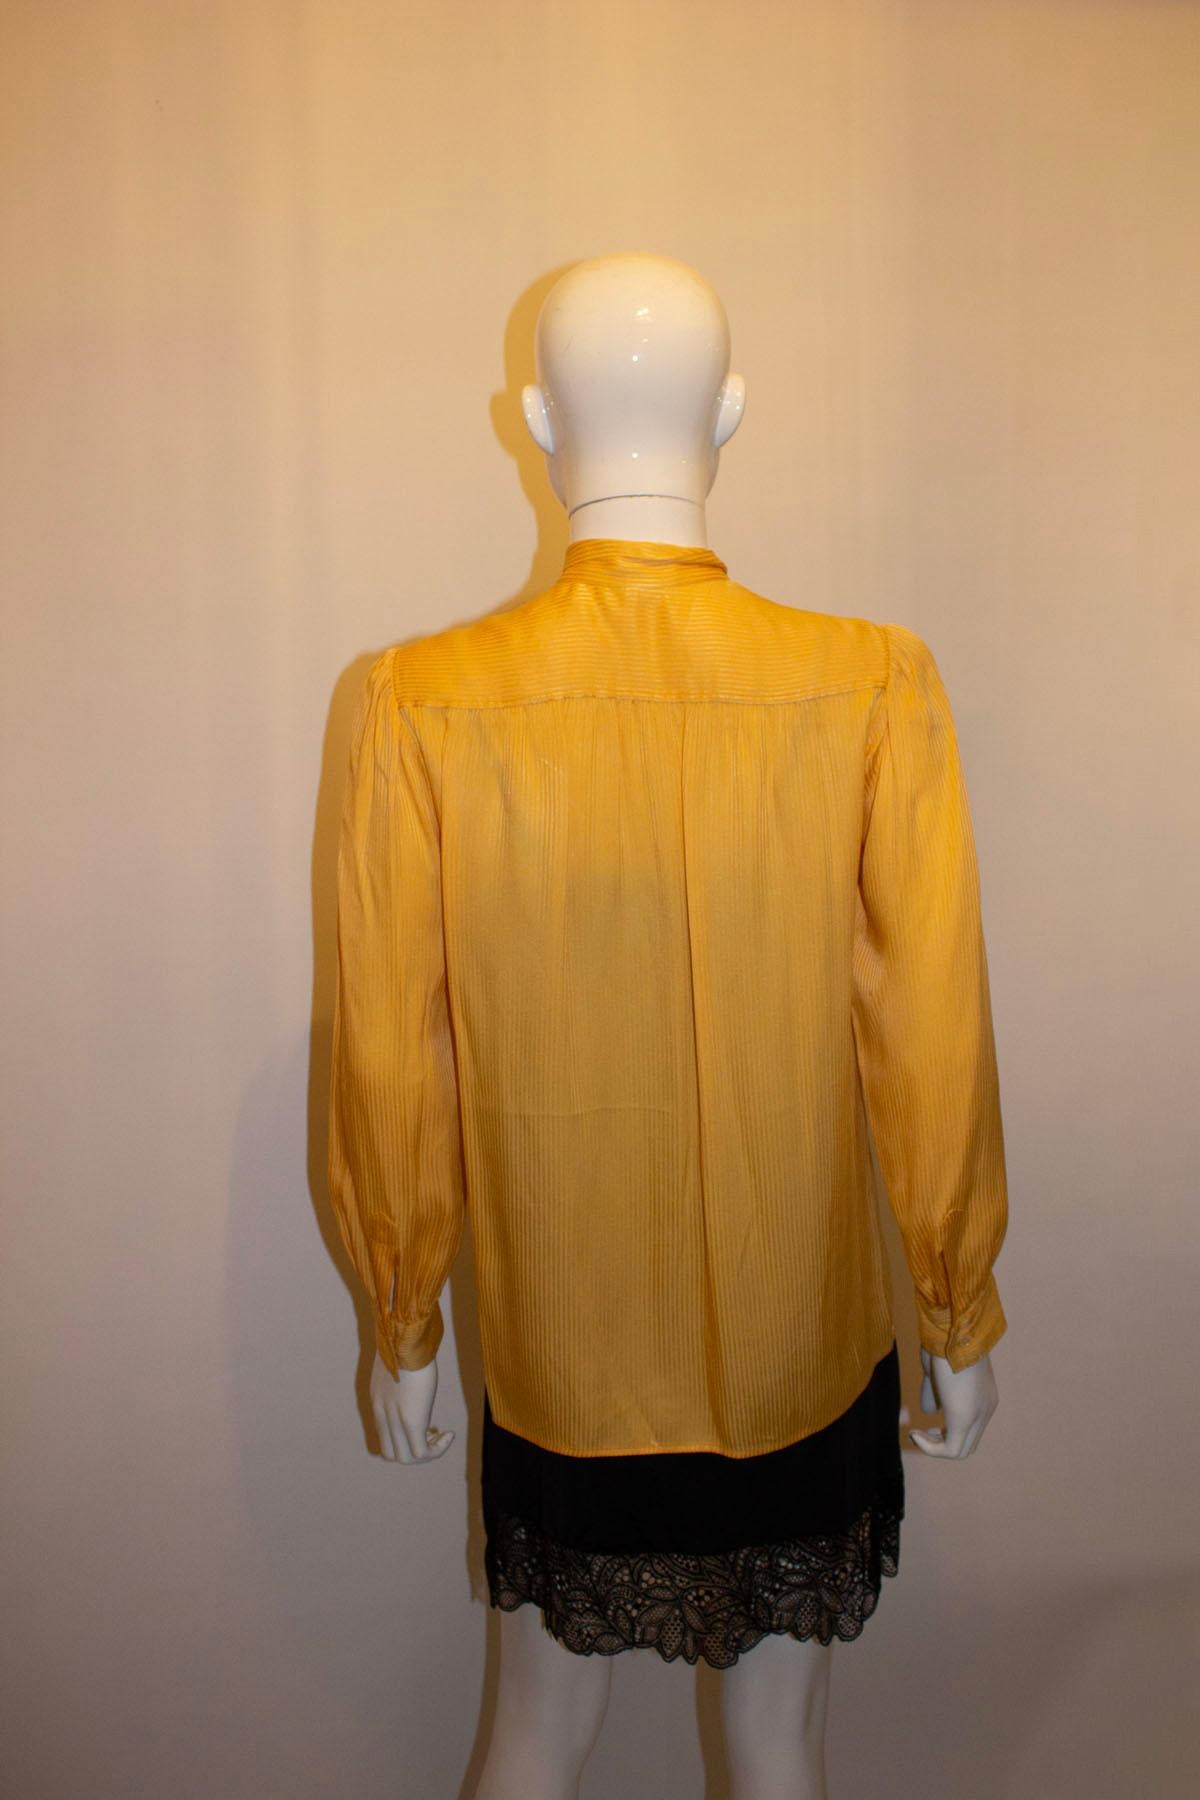 Eine tolle Vintage-Seidenbluse von Yves Saint Laurent Rive Gauche.  Die sonnengelbe Bluse wird im Nacken mit einem einzigen Knopf geschlossen, hat eine Fliege, Manschetten mit einem Knopf und Raffungen an der Passe, vorne und hinten. 
Größe 34 Maße: